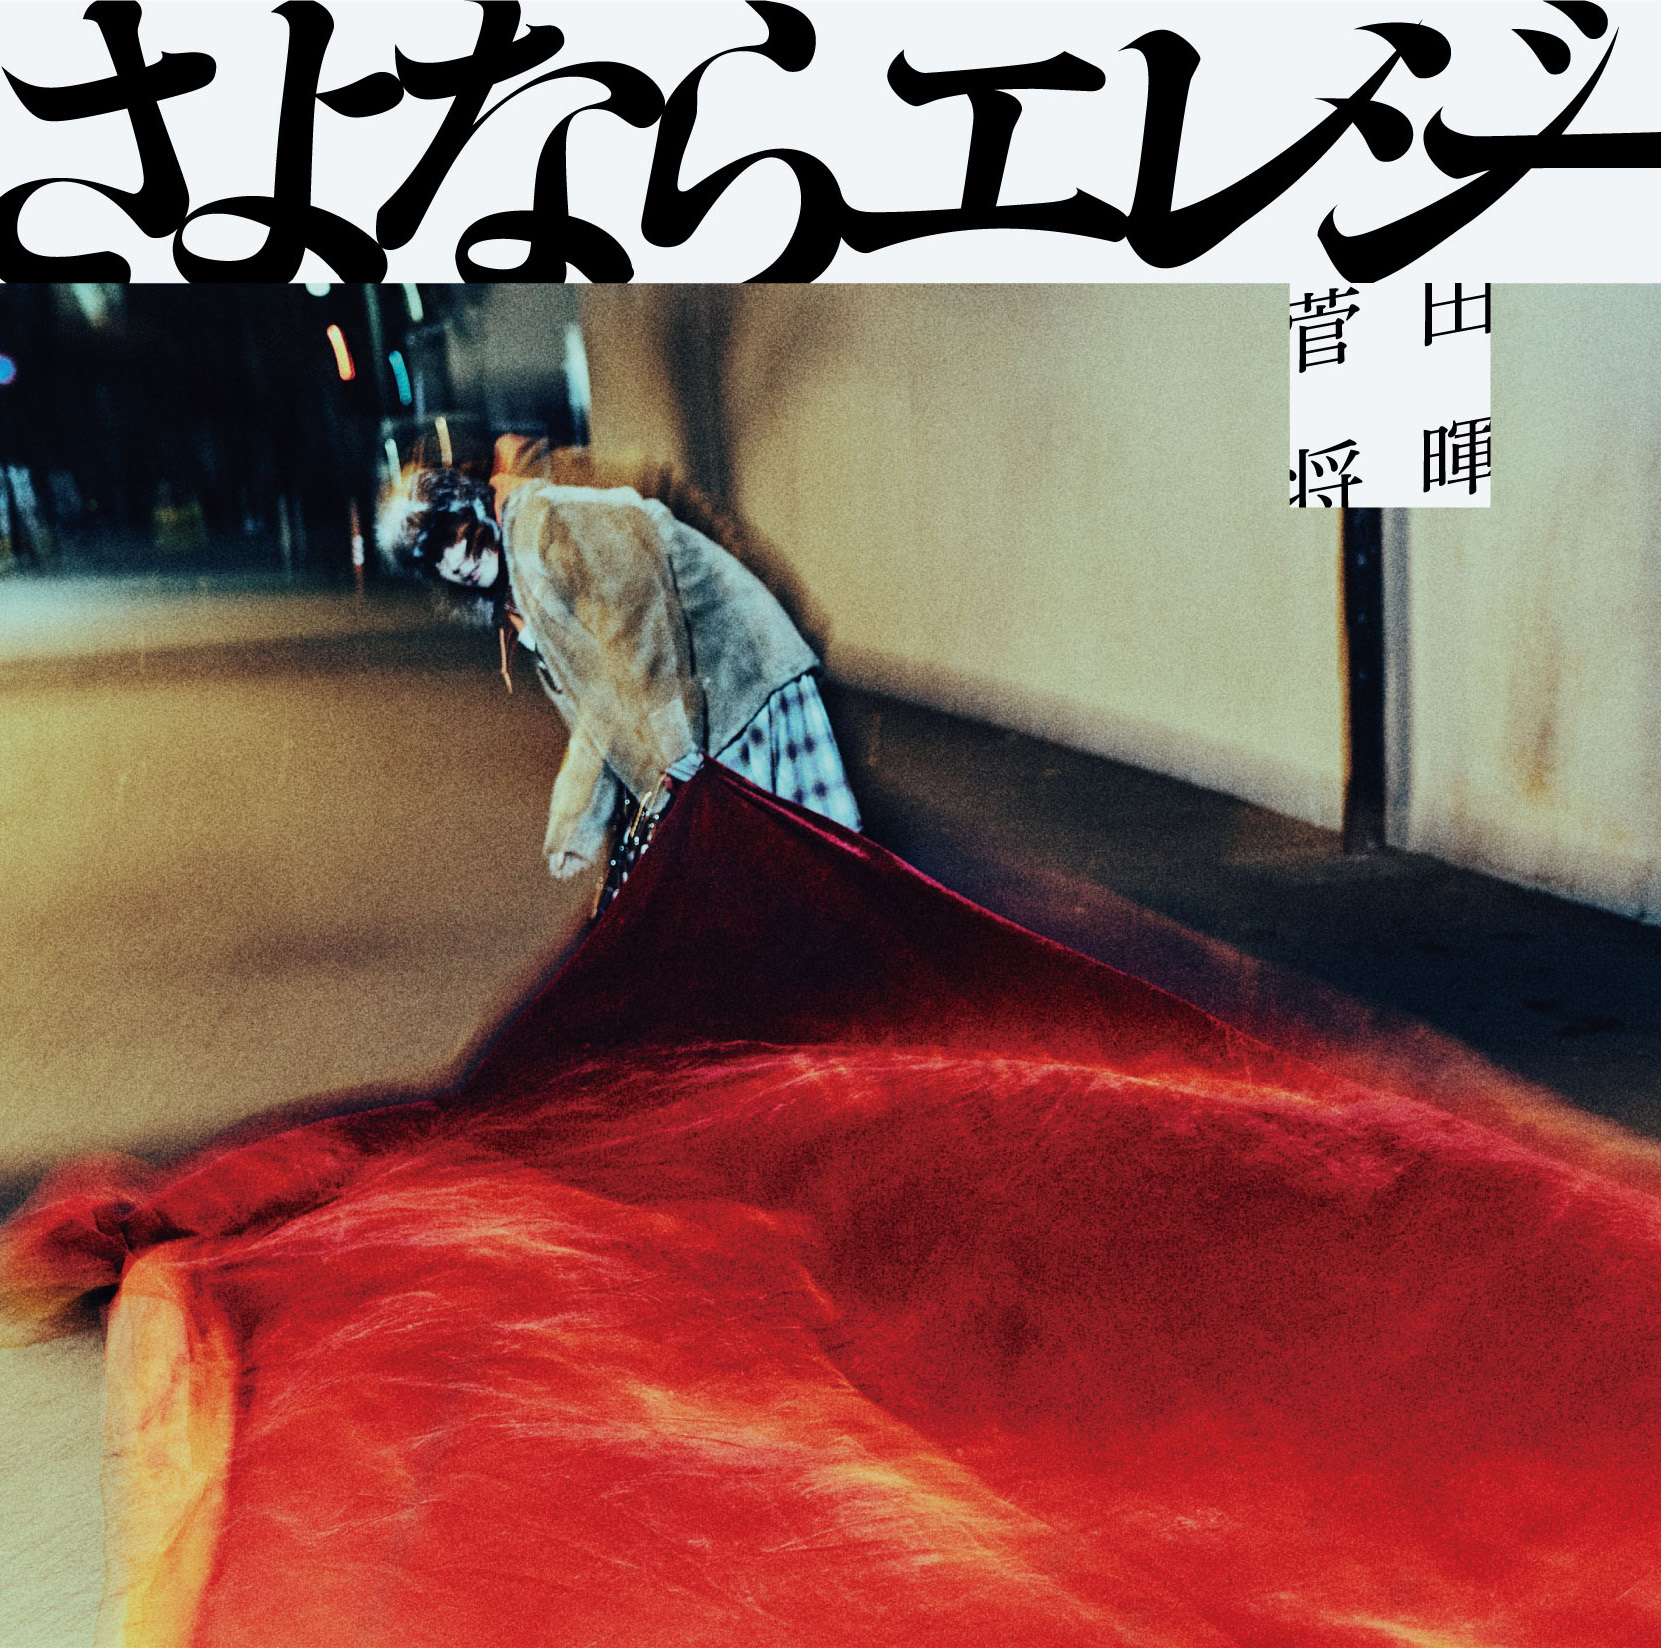 菅田将暉、3rdシングル「さよならエレジー」のジャケットアートワークを解禁 初の全国ツアーは追加公演が決定 | SPICE - エンタメ特化型